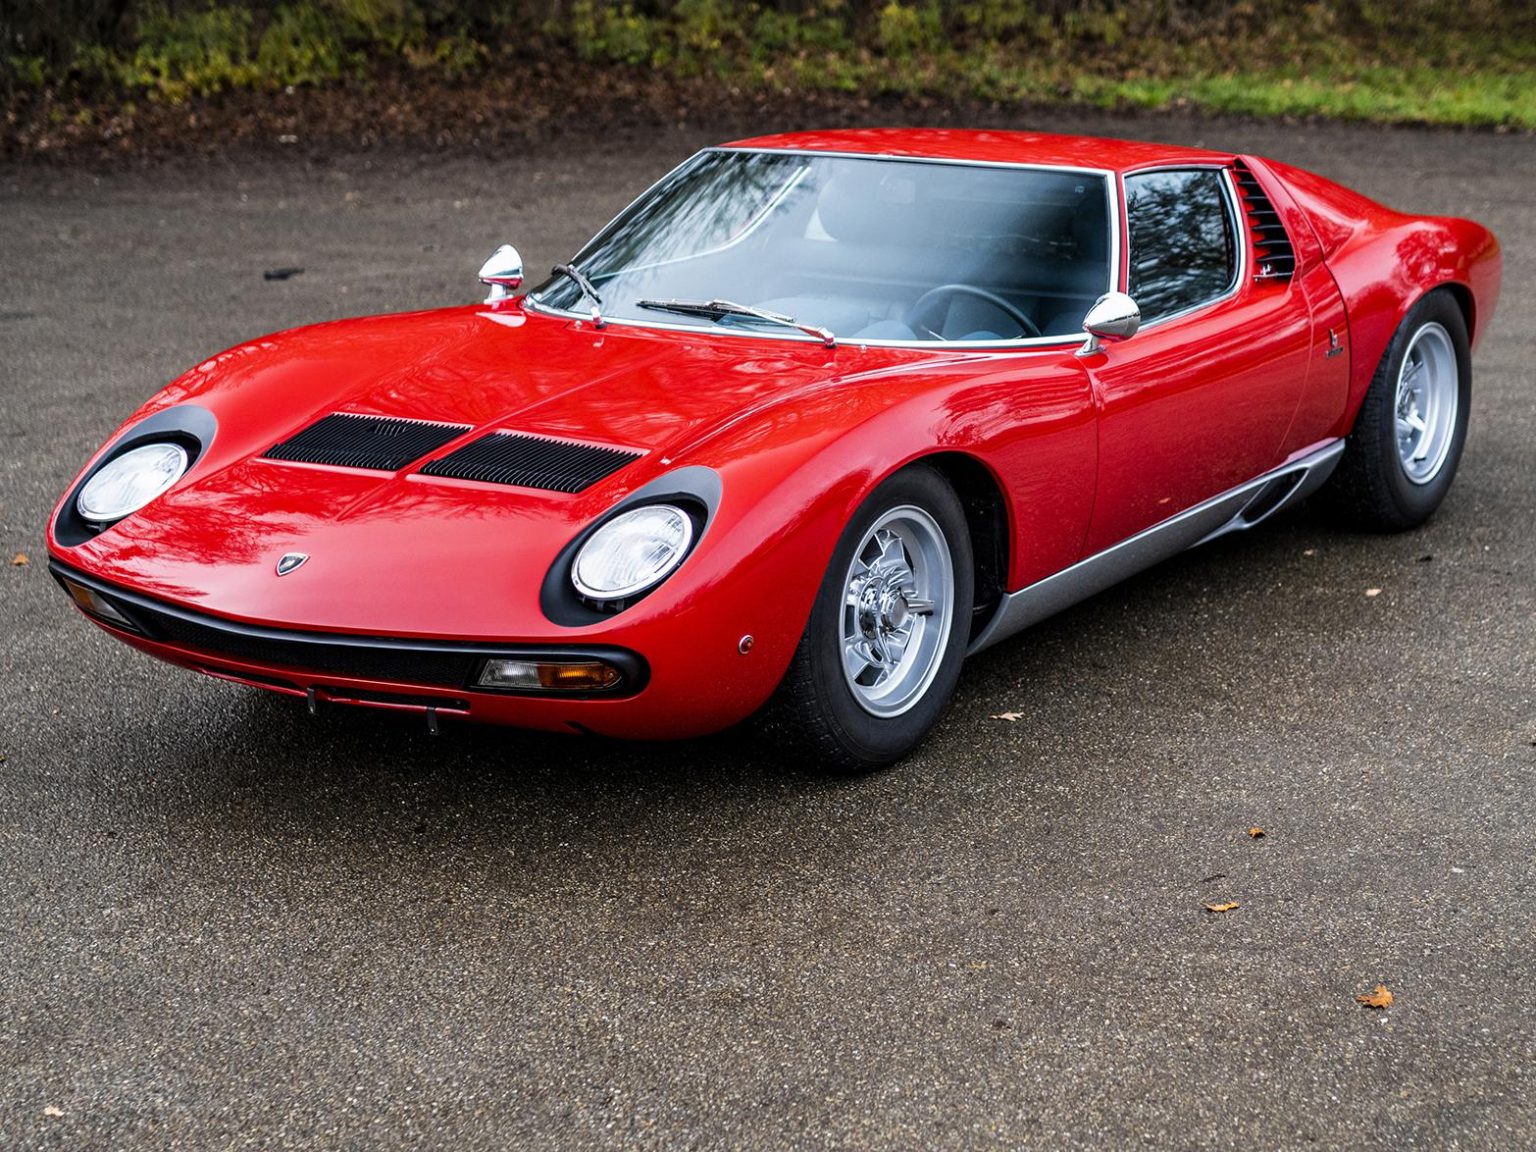 This 1971 Lamborghini Miura SV sold for a high sum.